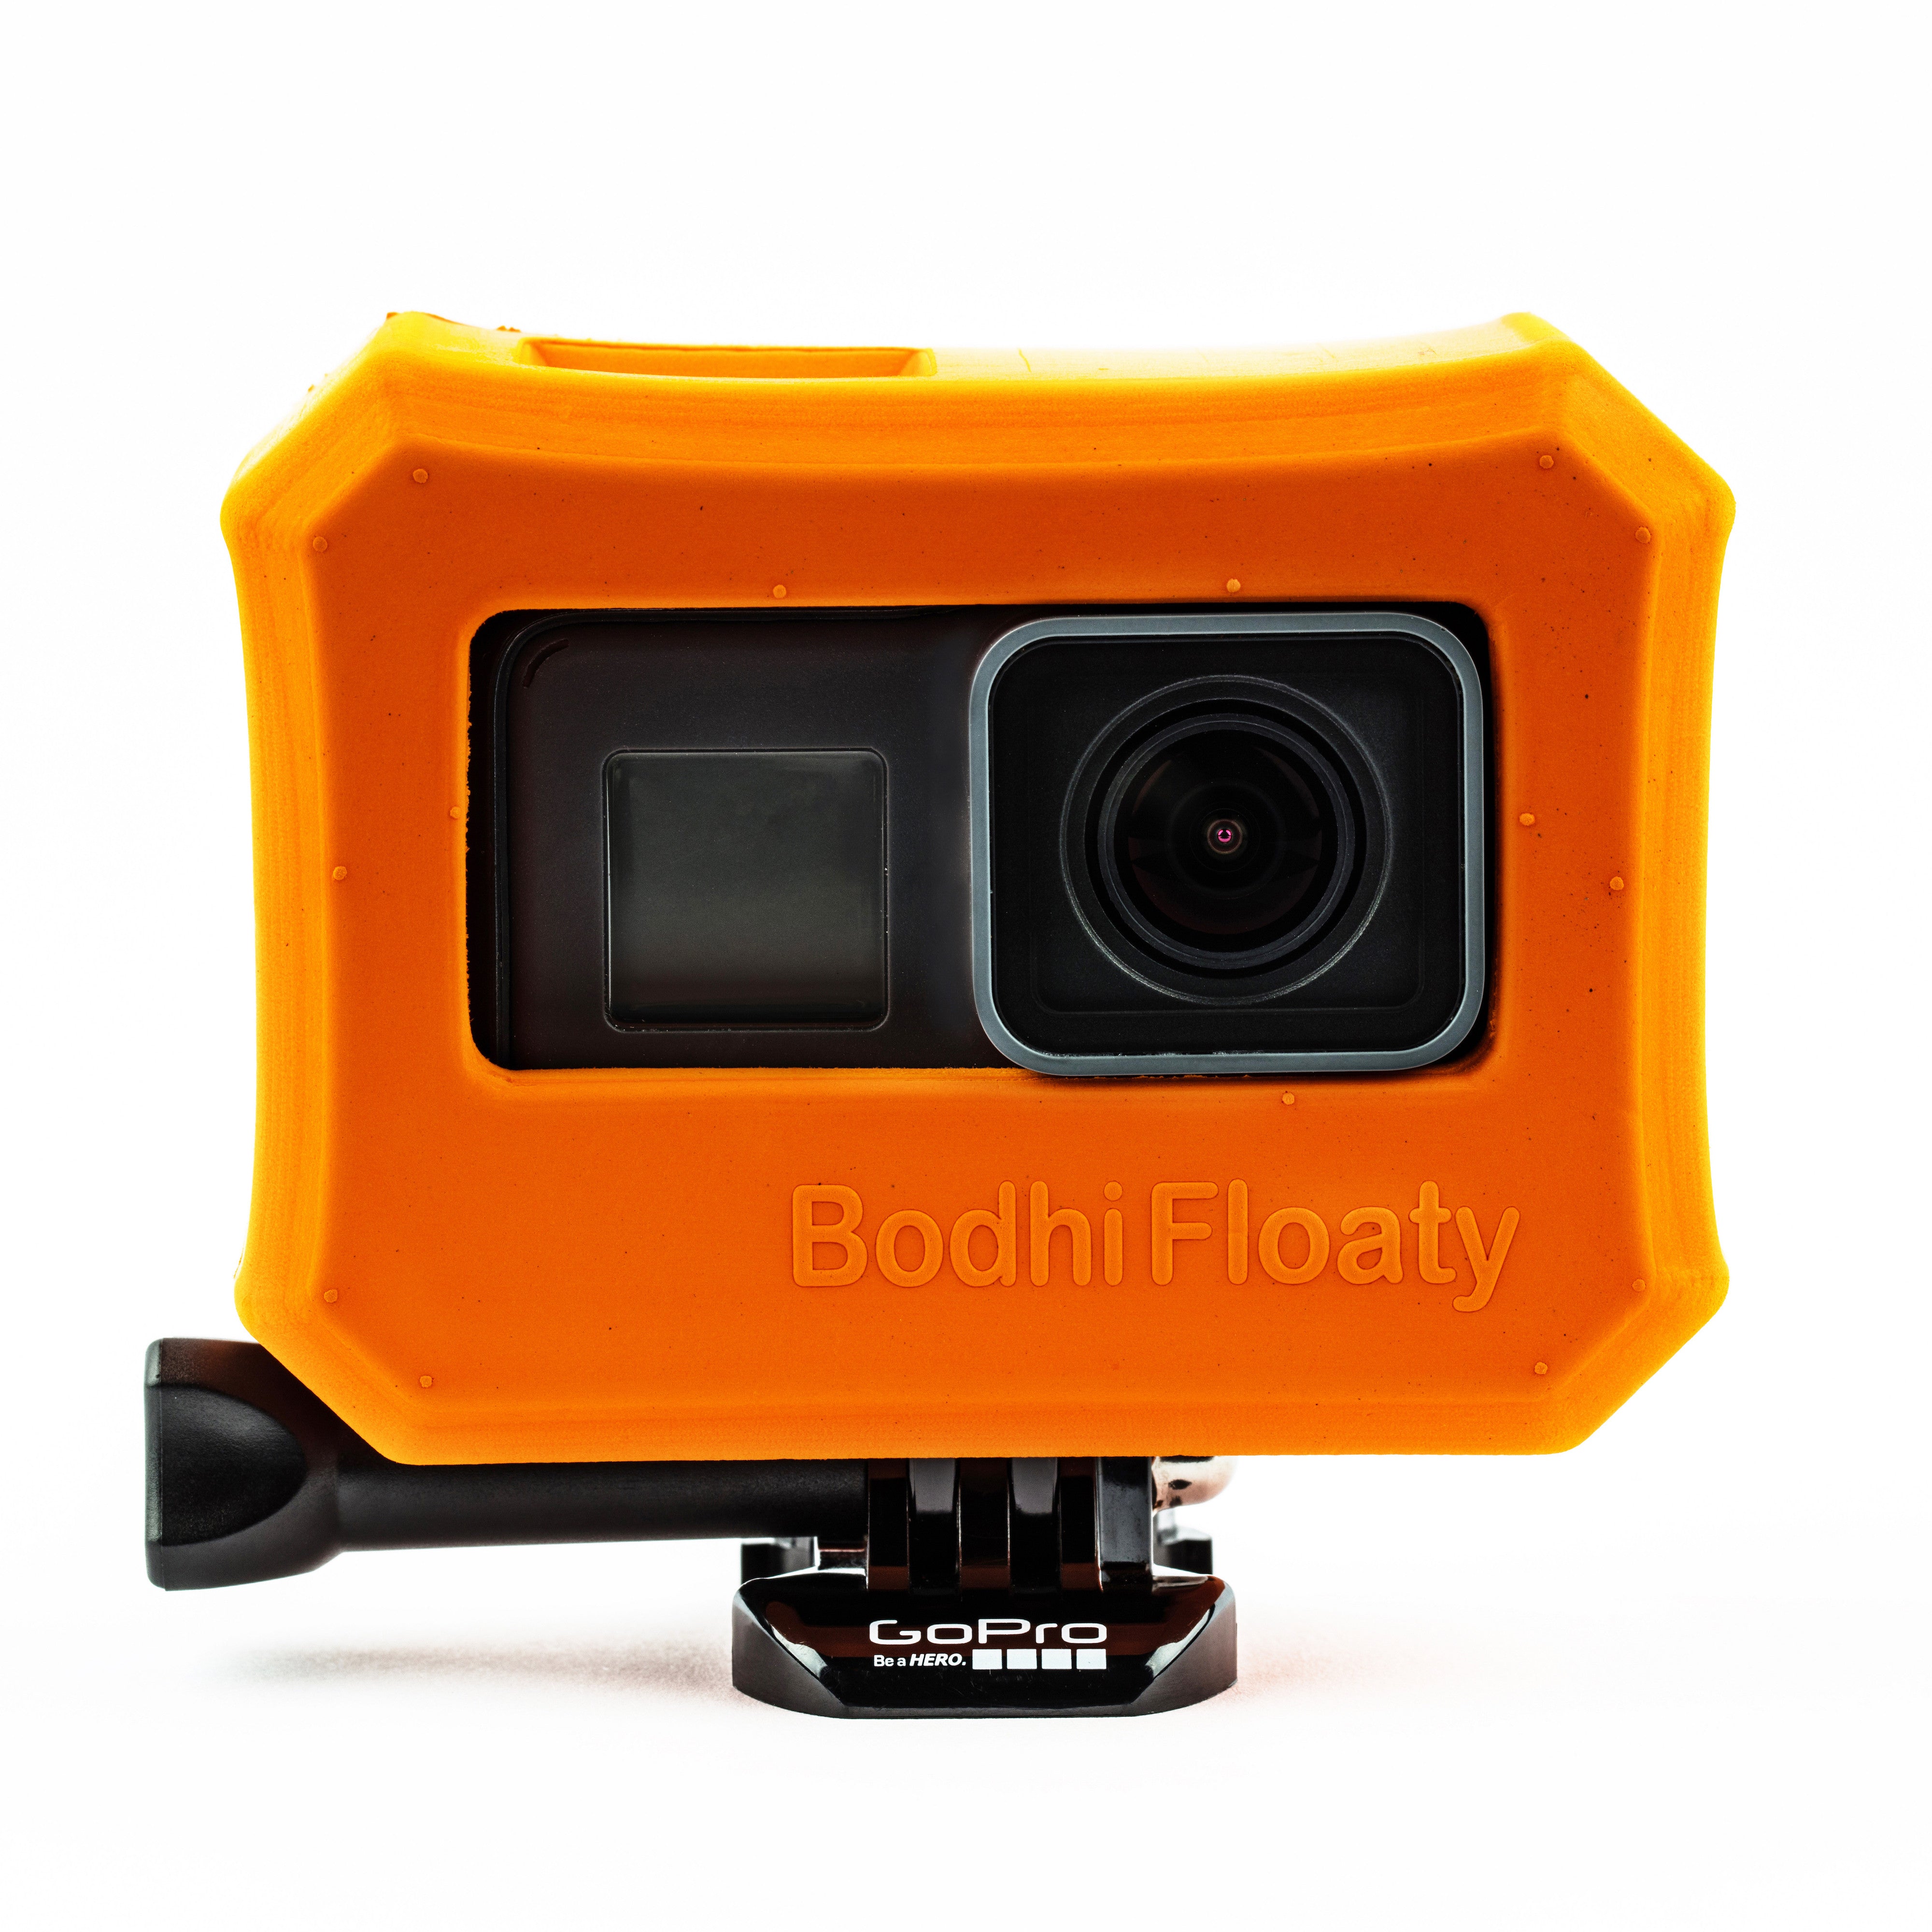 Luftfart Ubrugelig En god ven Bodhi Floaty Case, for GoPro HERO5 Black